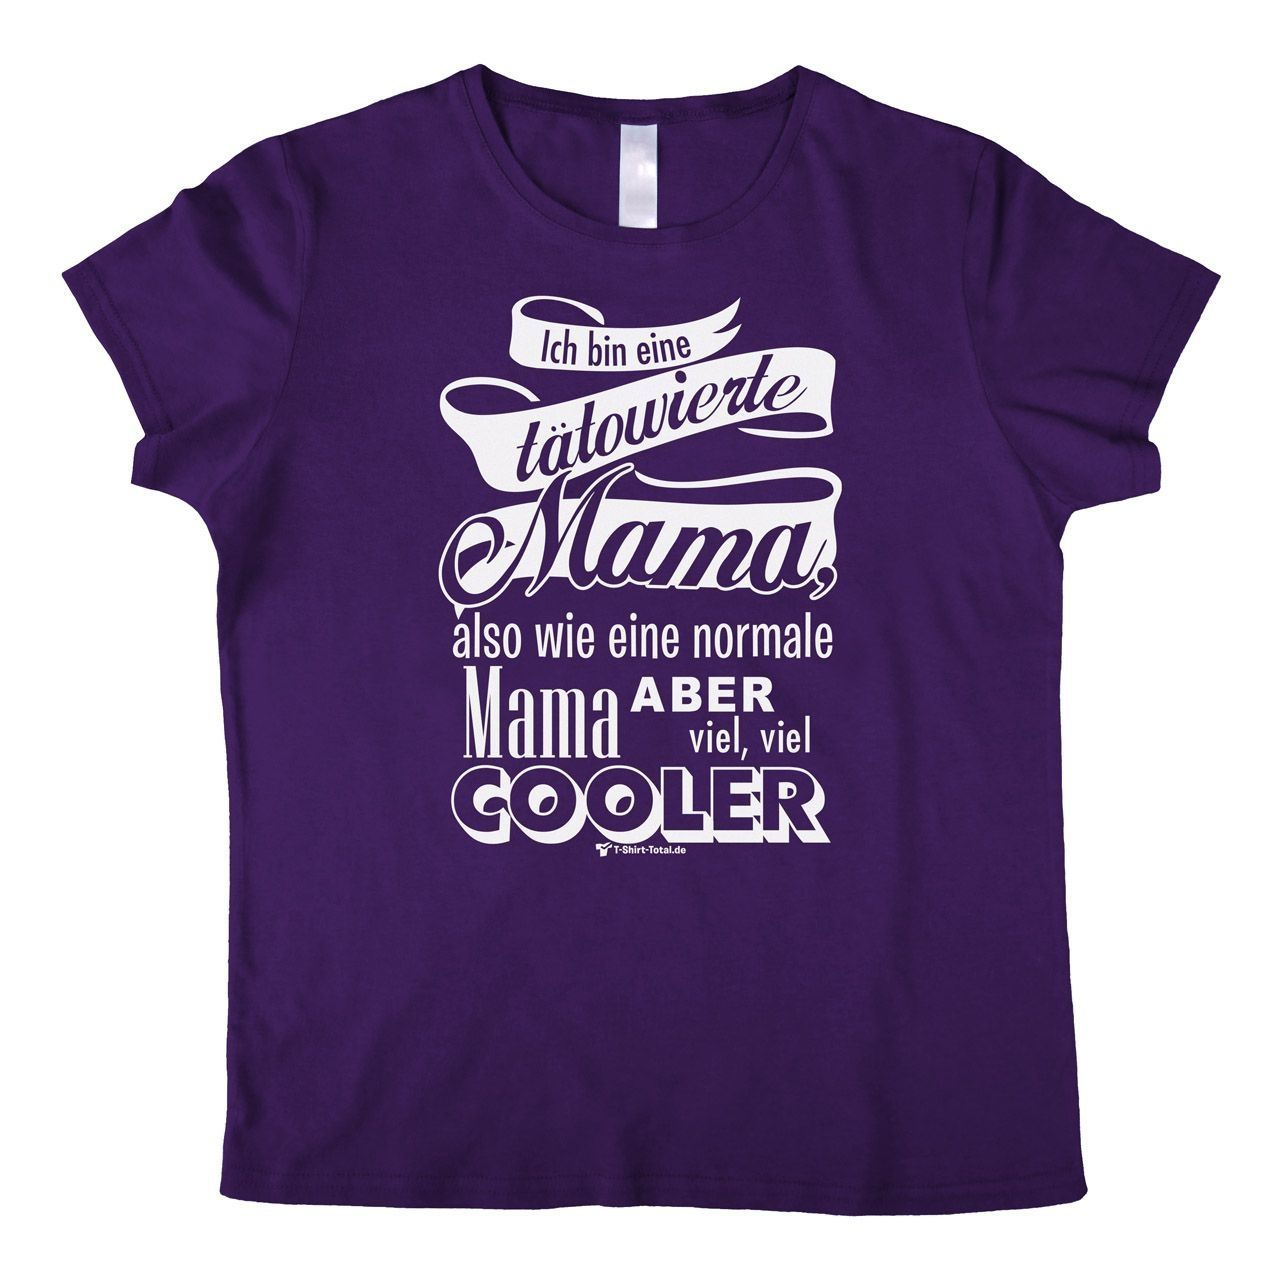 Tätowierte Mama Woman T-Shirt lila Small